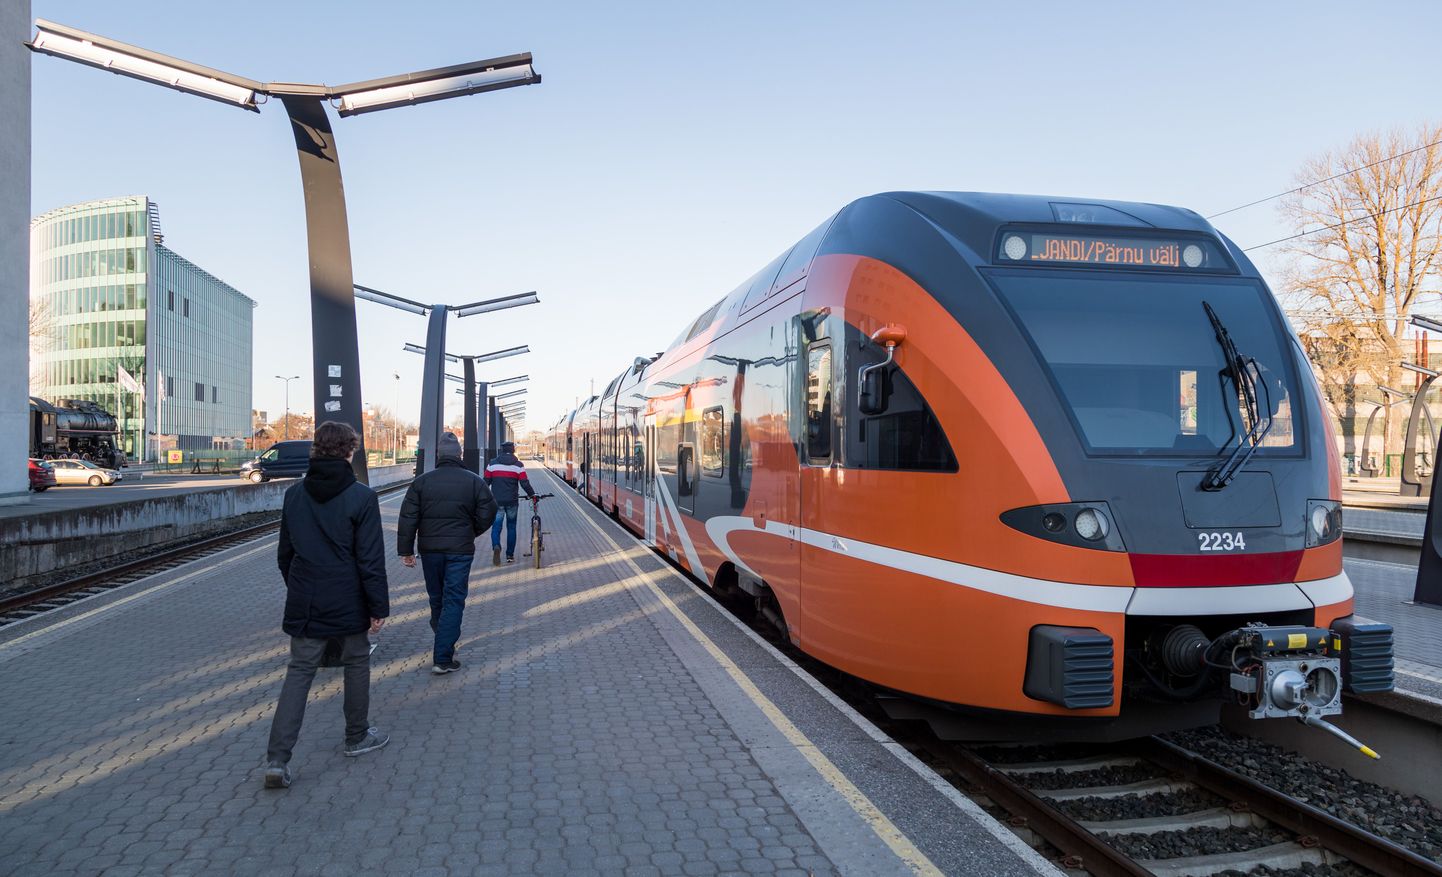 Elroni rong, 18.04.2017
Hommikune Tallinn-Pärnu rong Balti Jaamas, rahvas läheb rongile. 
FOTO: MIHKEL MARIPUU/POSTIMEES